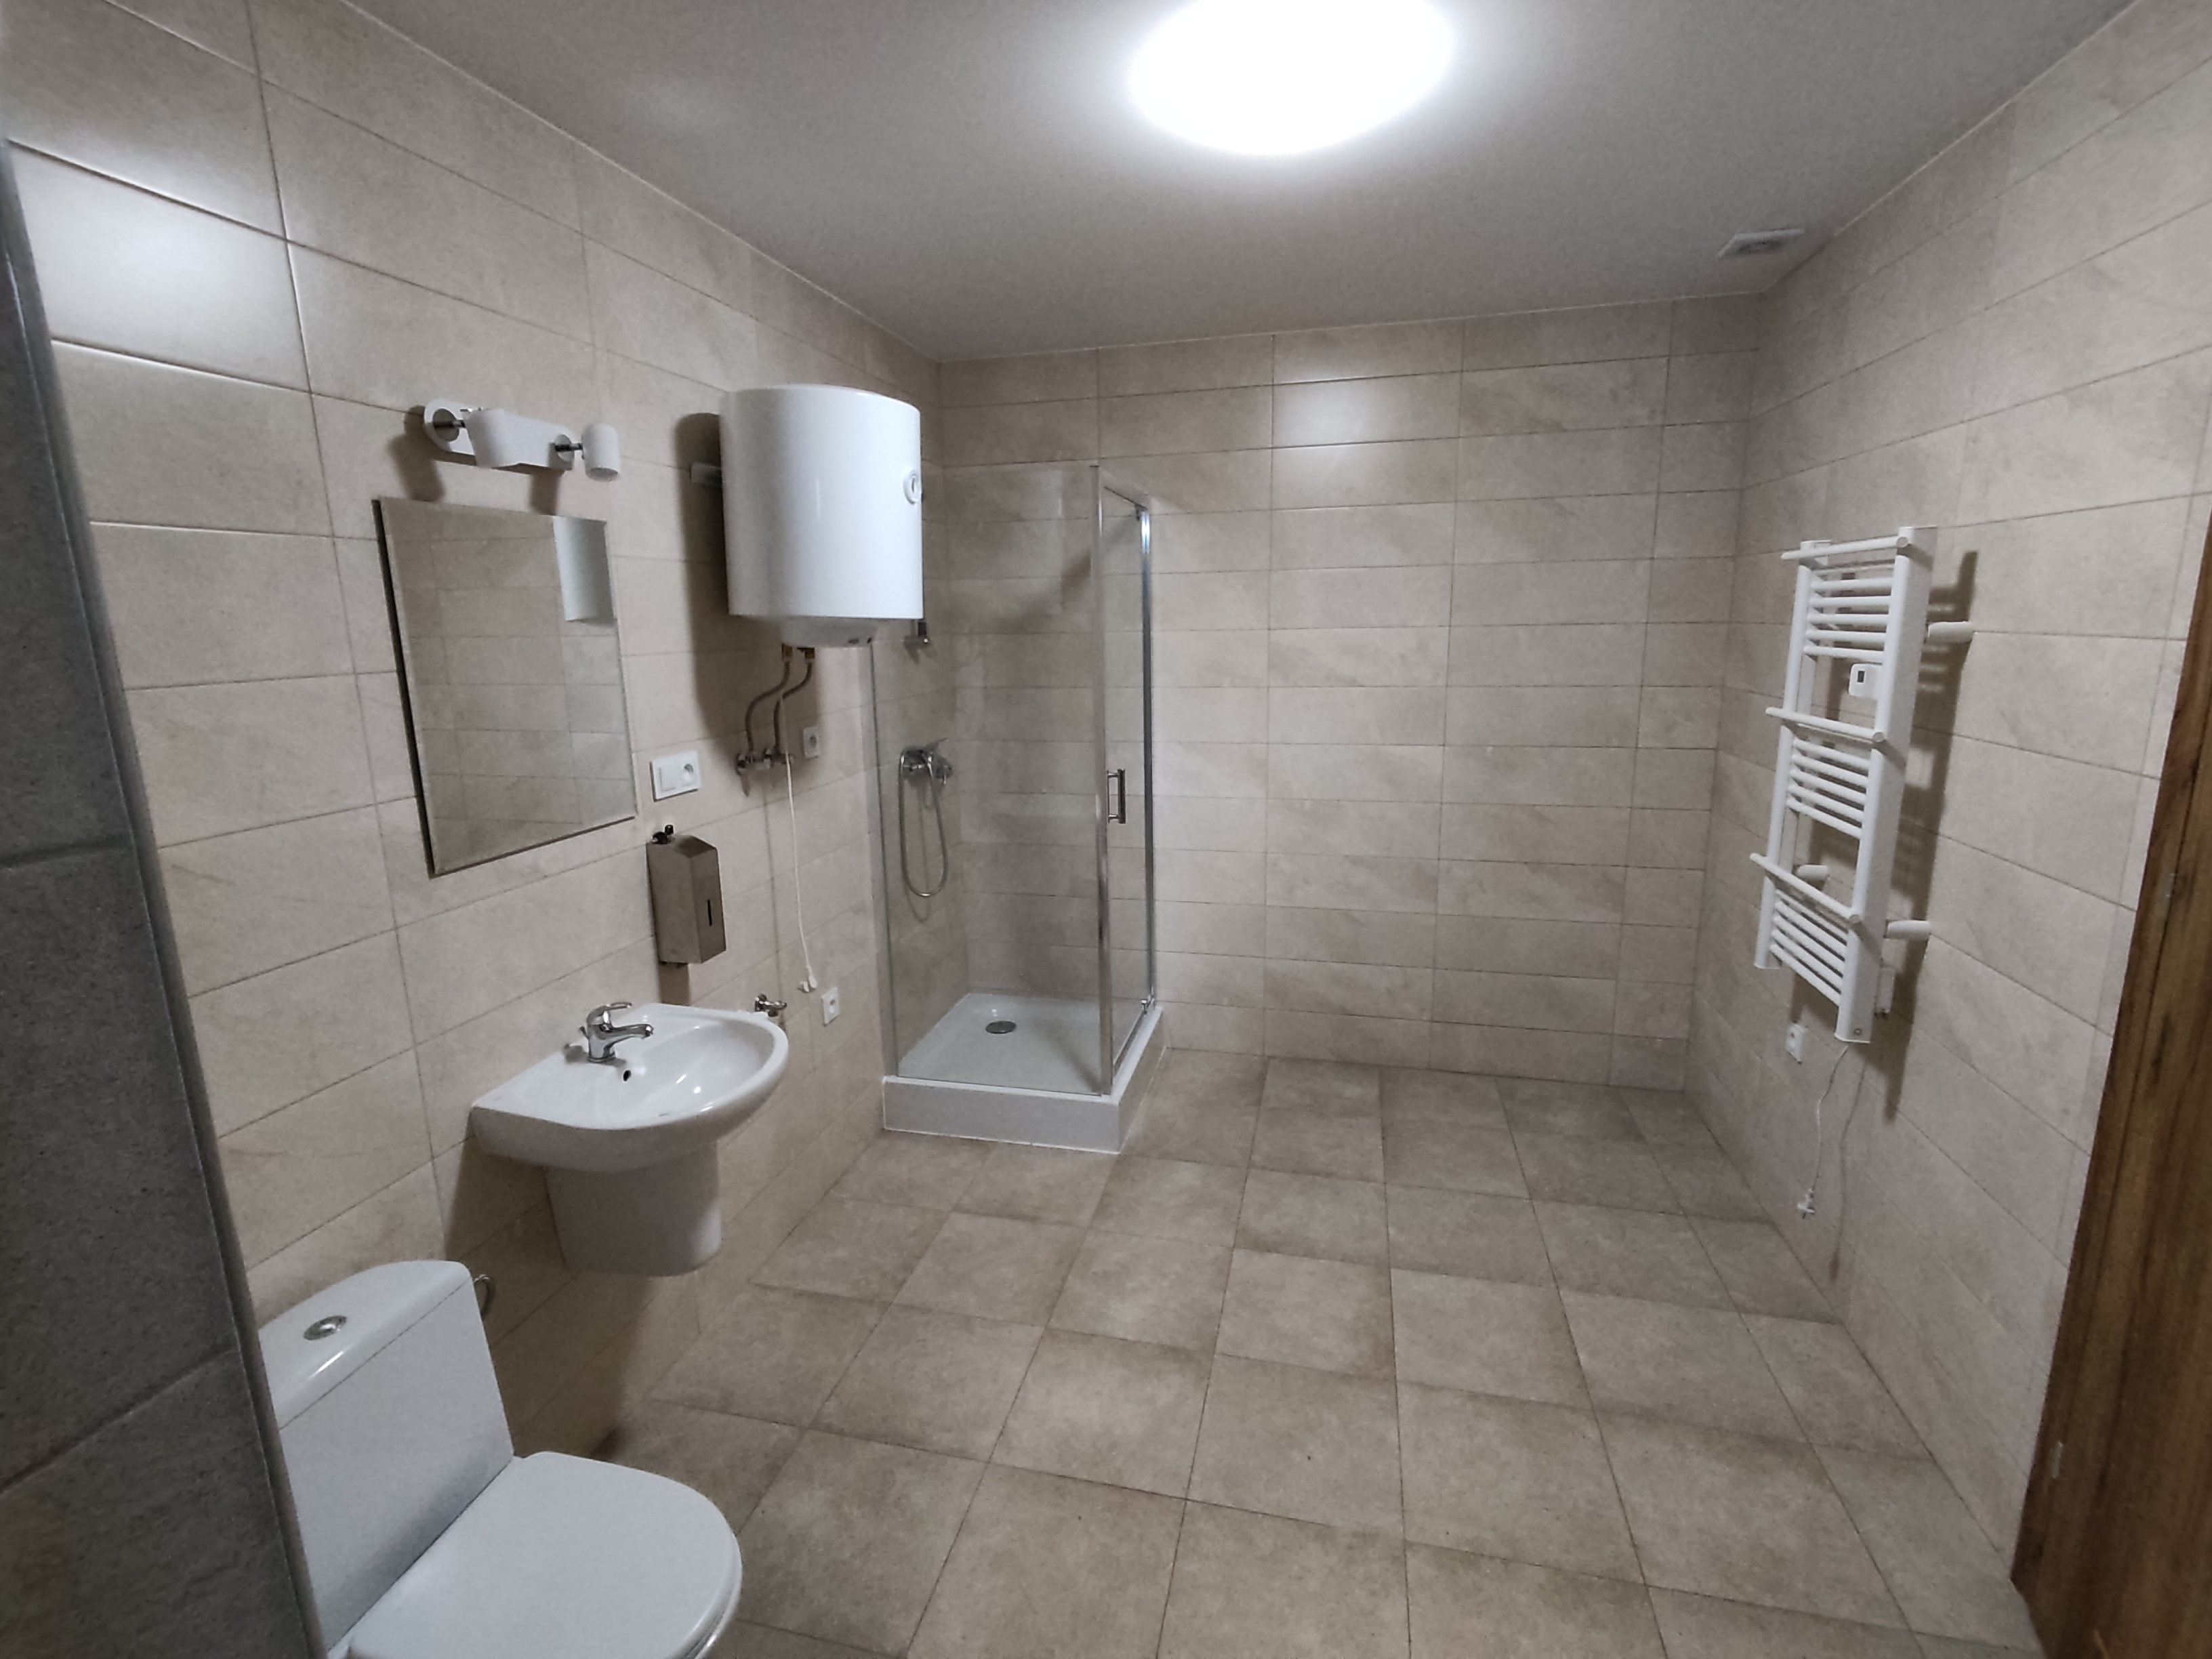 zdjęcie przedstawia wyremontowane pomieszczenie nowej łazienki